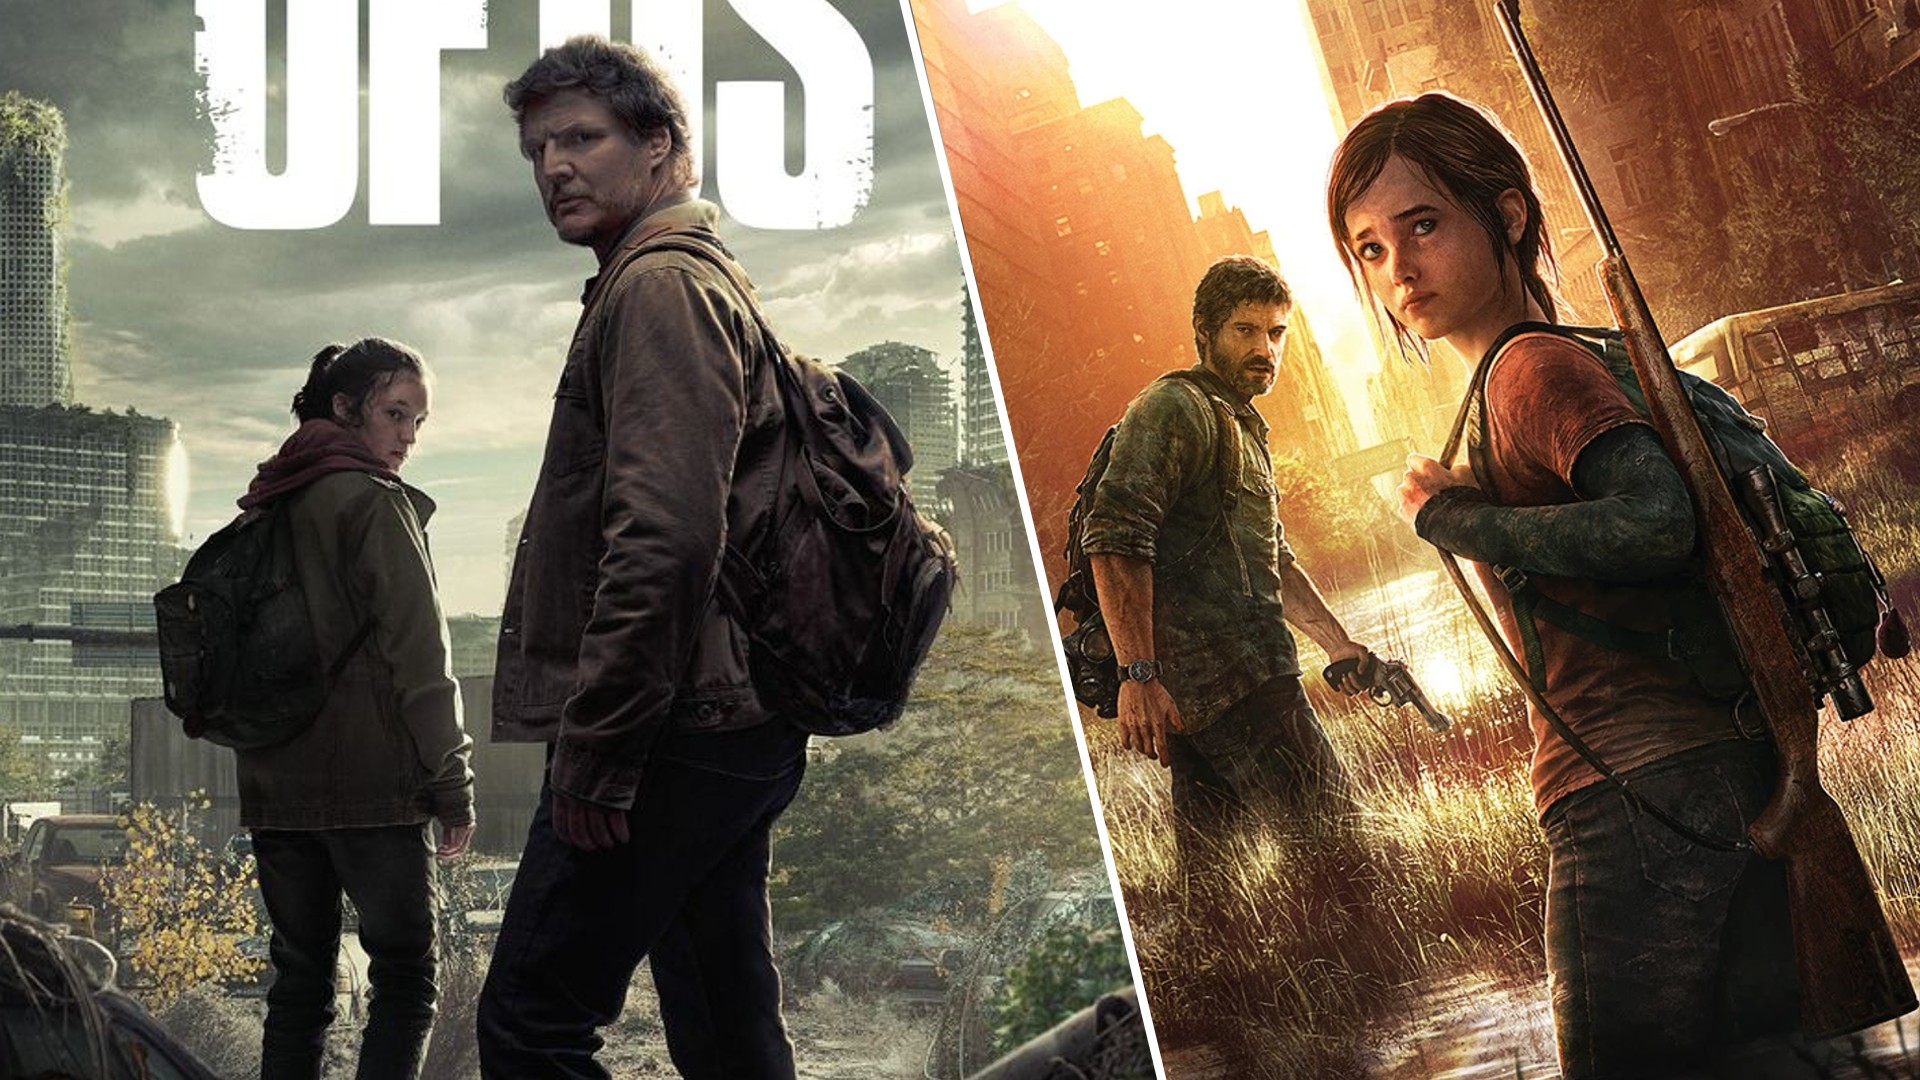 Por que 'The Last of Us' (e outros games) não deveriam virar filmes -  28/07/2020 - UOL Splash